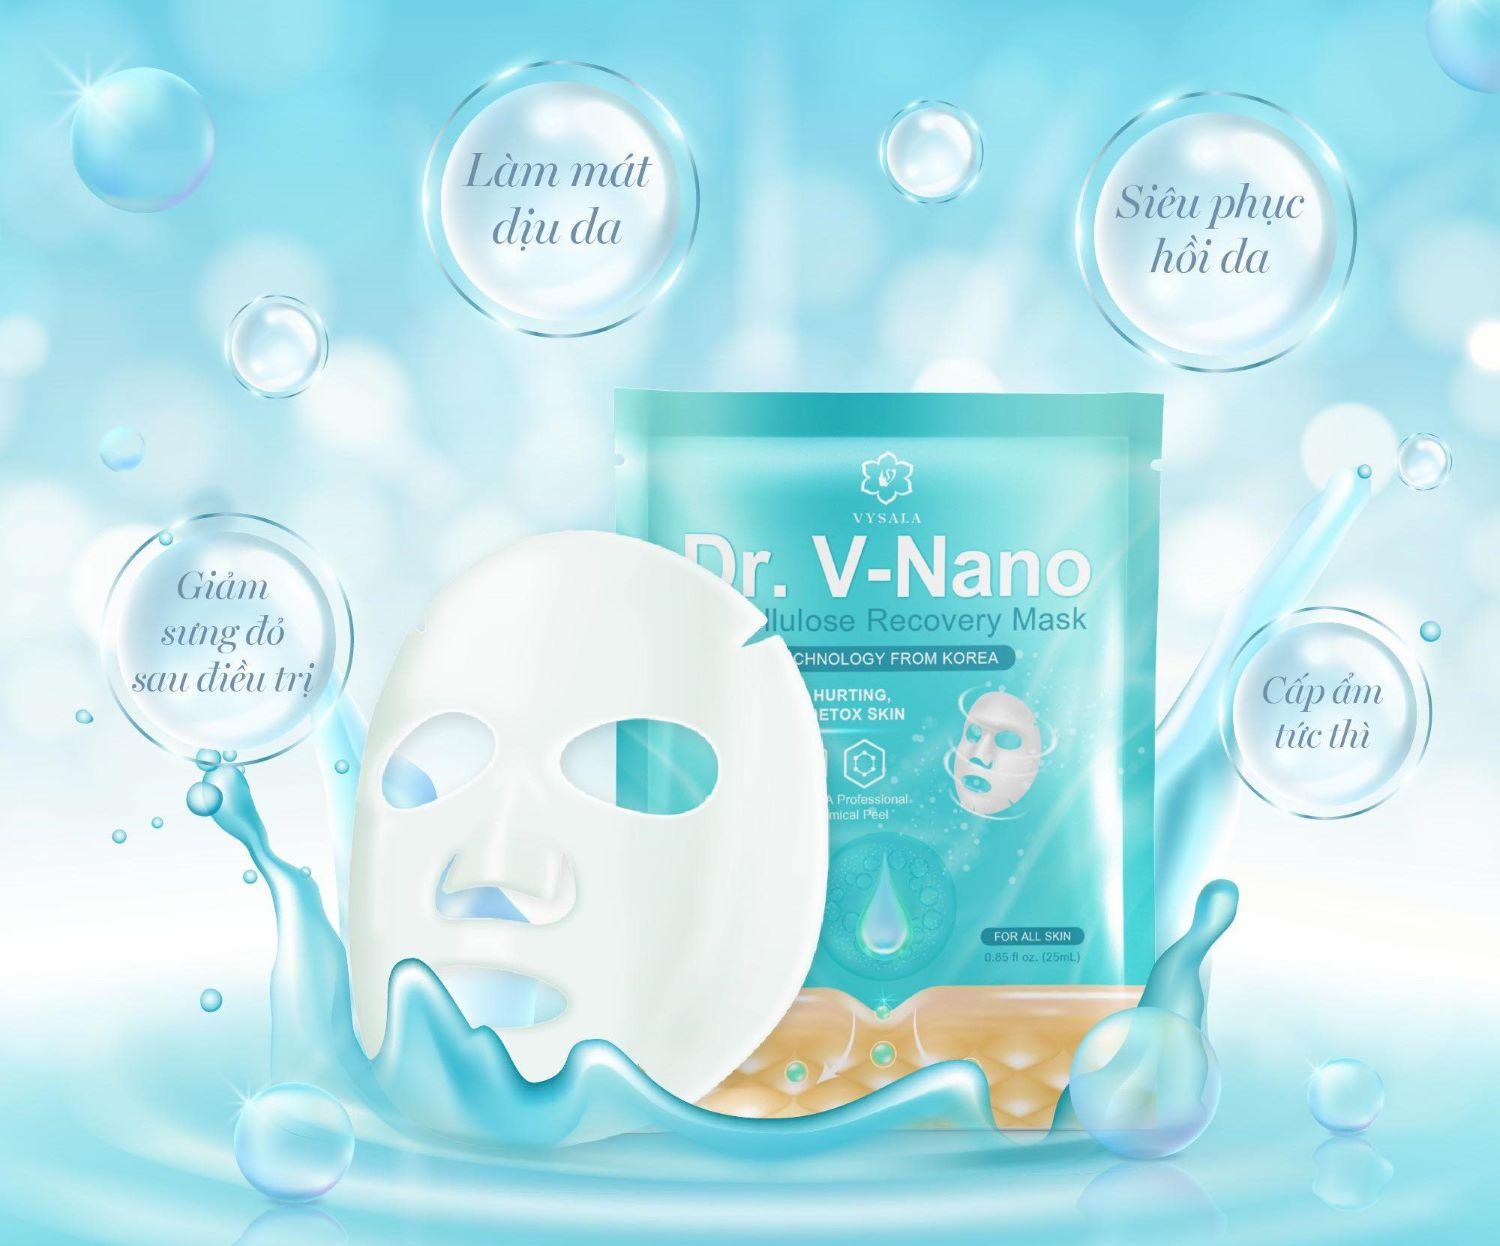 Mặt nạ DR. V-NANO là  dòng mặt nạ đầu tiên sản xuất tại Việt Nam sử dụng được cho vết thương hở